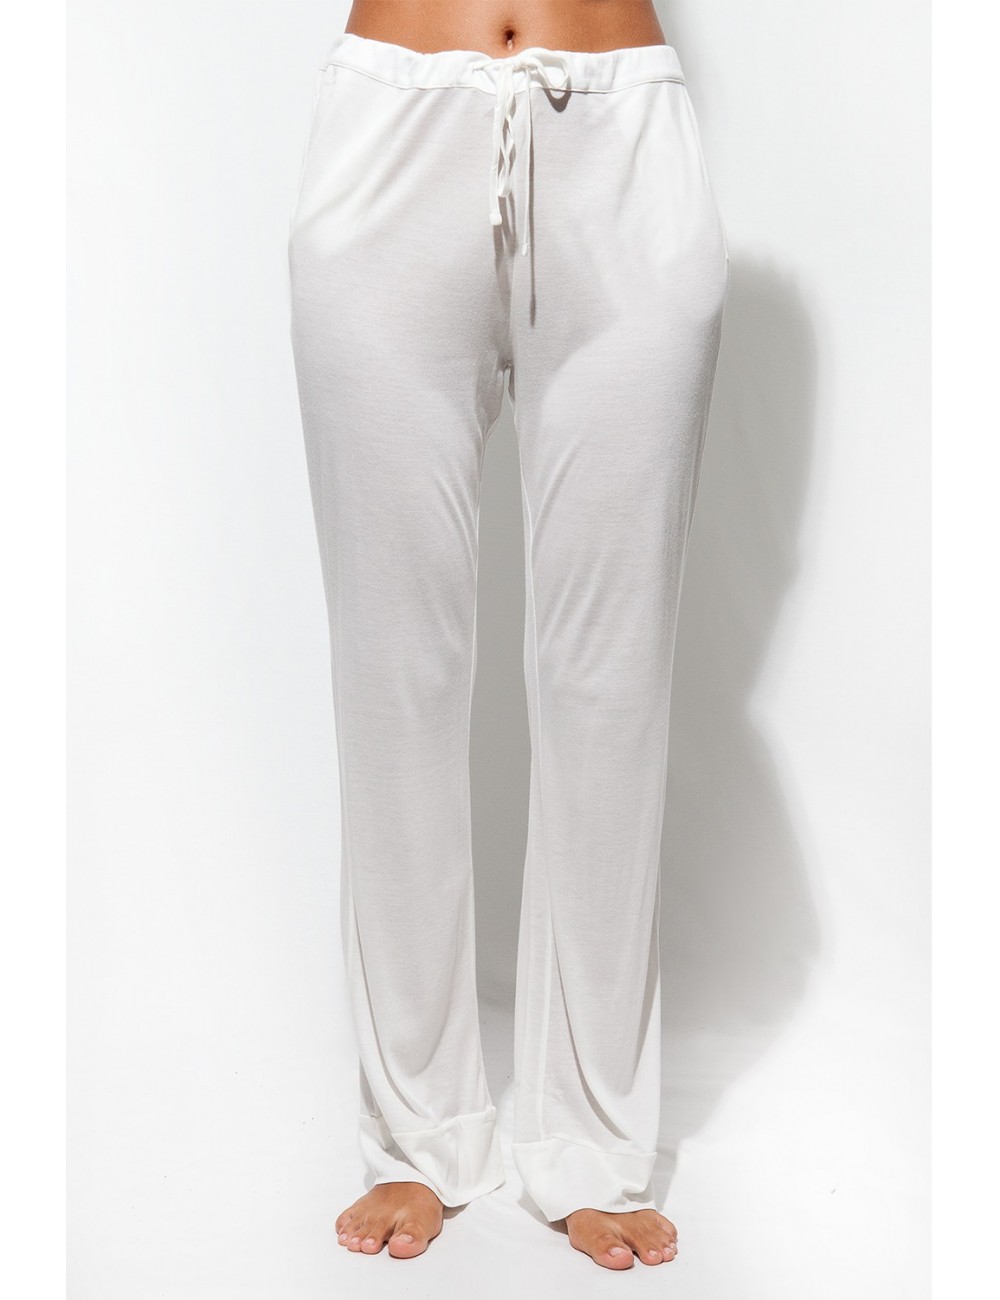 Drawstring Pants - Mercerized Egyptian Cotton - Nourishing - The